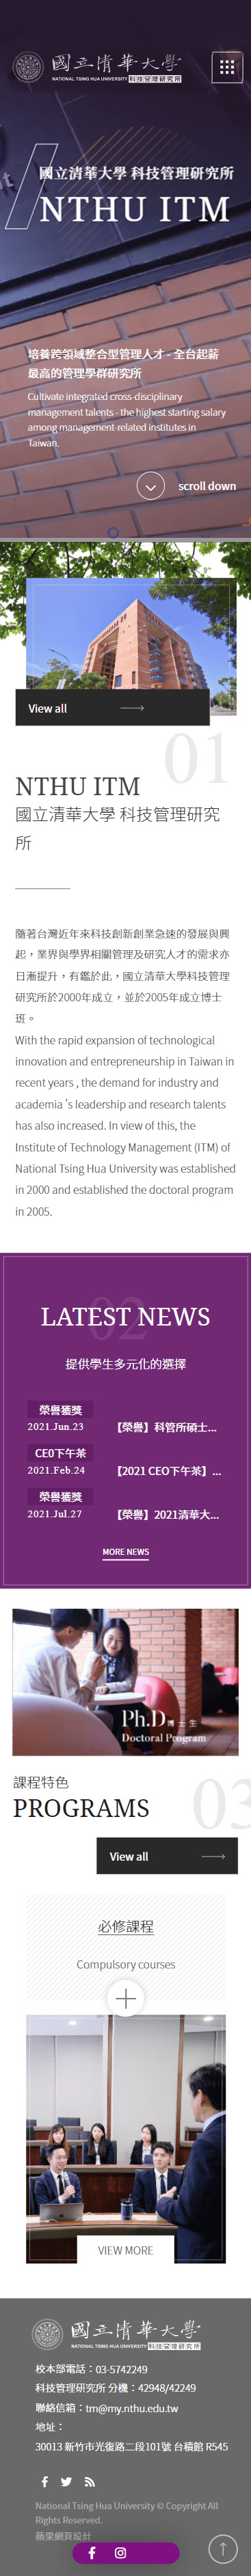 國立清華大學-科技管理研究所-手機板縮圖